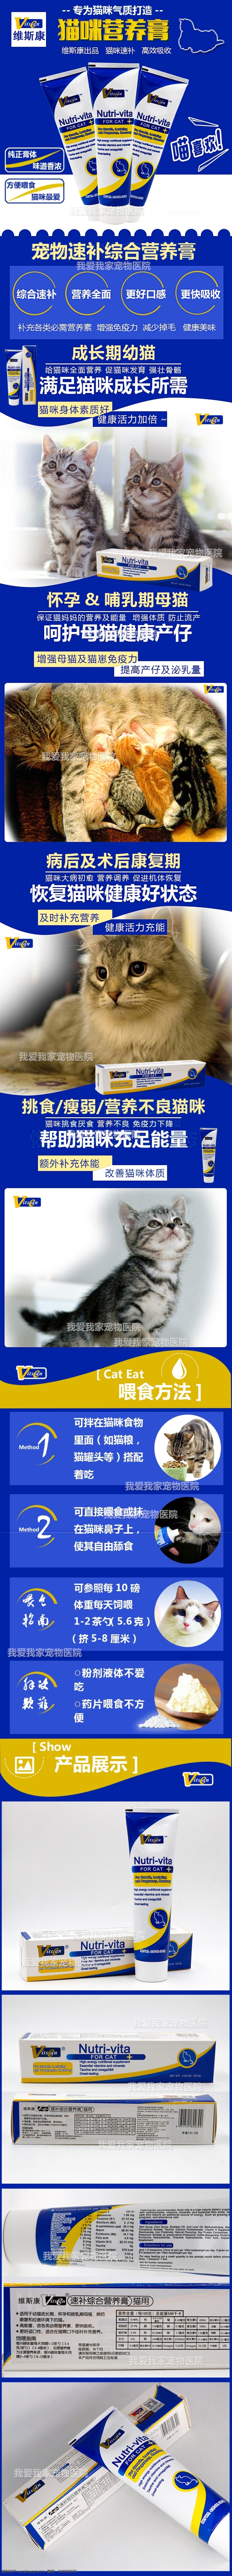 维斯 康 营养 膏 详情 产品详情 详情模板 猫咪 宠物营养品 蓝色主题 猫